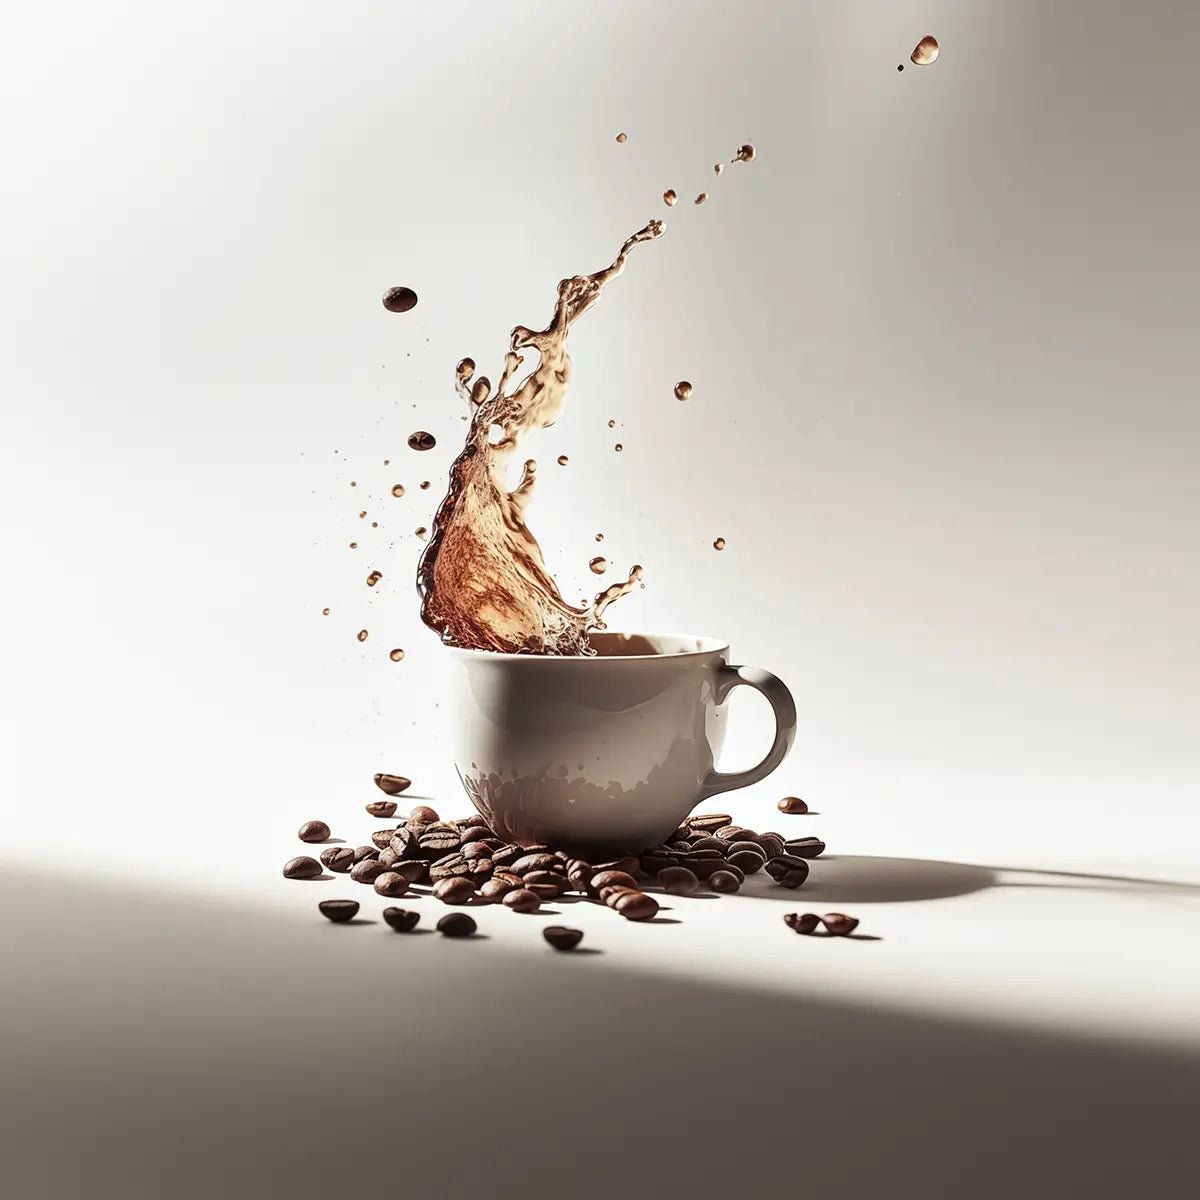 en kopp kaffe bland kaffebönor med kaffe som skvätter ur koppen